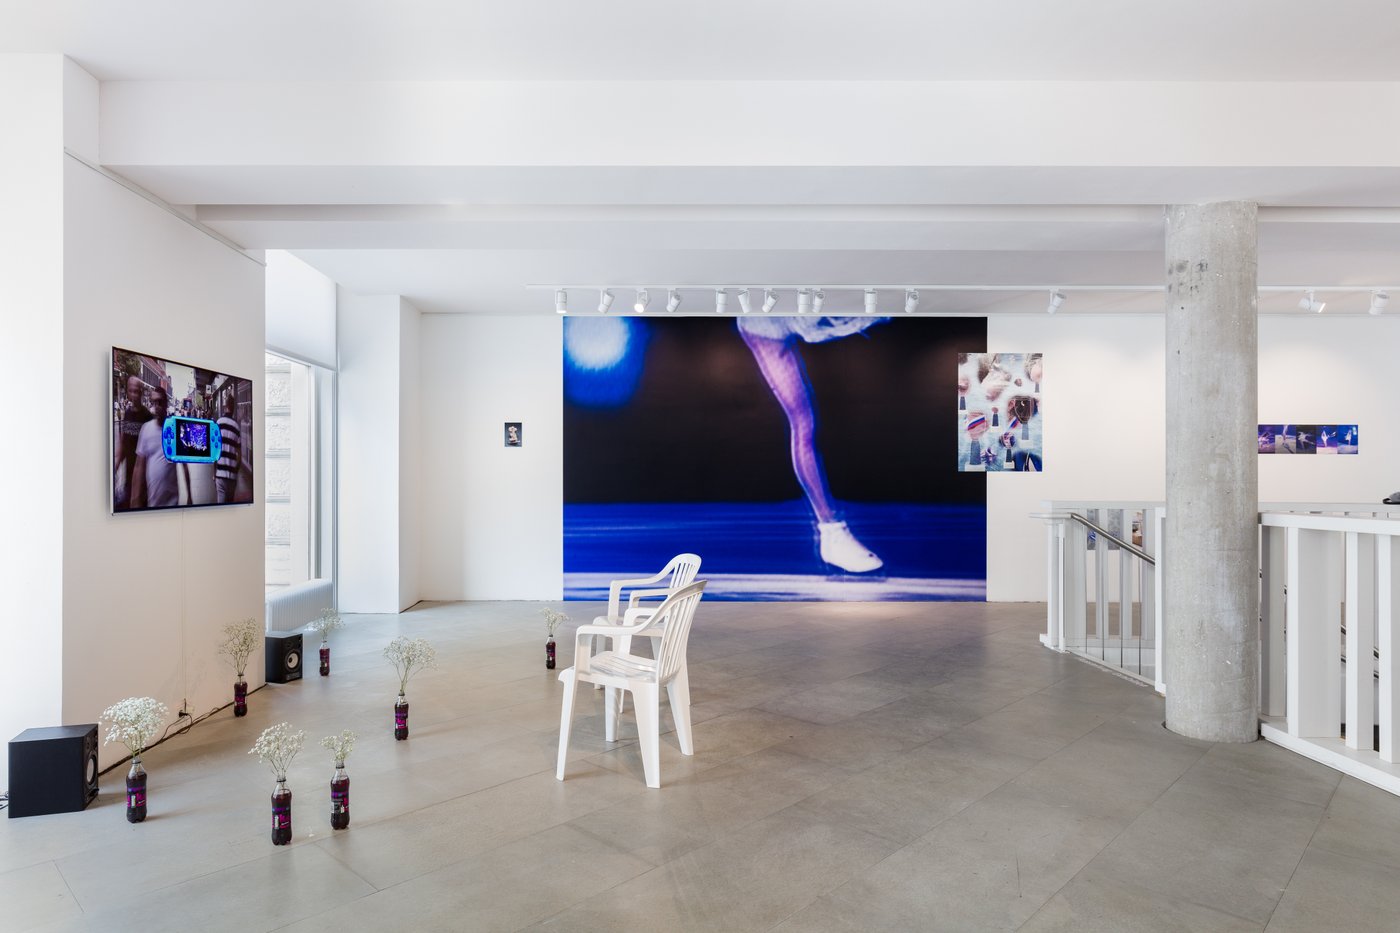 Im Ausstellungsraum stehen vor einem Screen Colaflaschen mit weißen Blüten und zwei Plastikstühle. Im Hintergrund eine Fototapete mit dem Bein einer Schlittschuhläuferin und andere fotografische Auseinandersetzungen mit dem Thema.